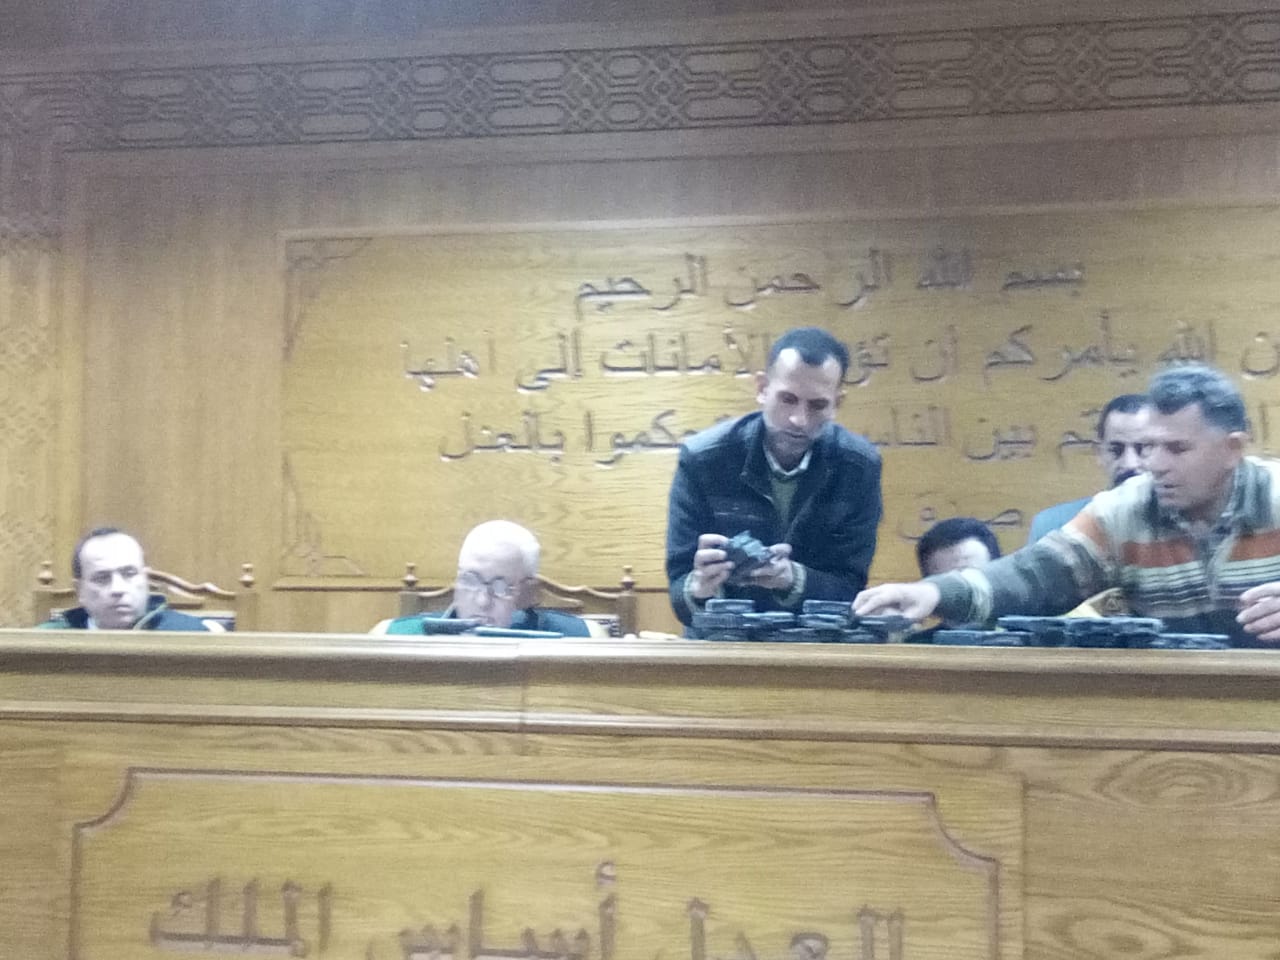 هيئة المحكمة برئاسة المستشار محمد سعيد الشربينى تفض احراز العائدون من ليبيا (1)